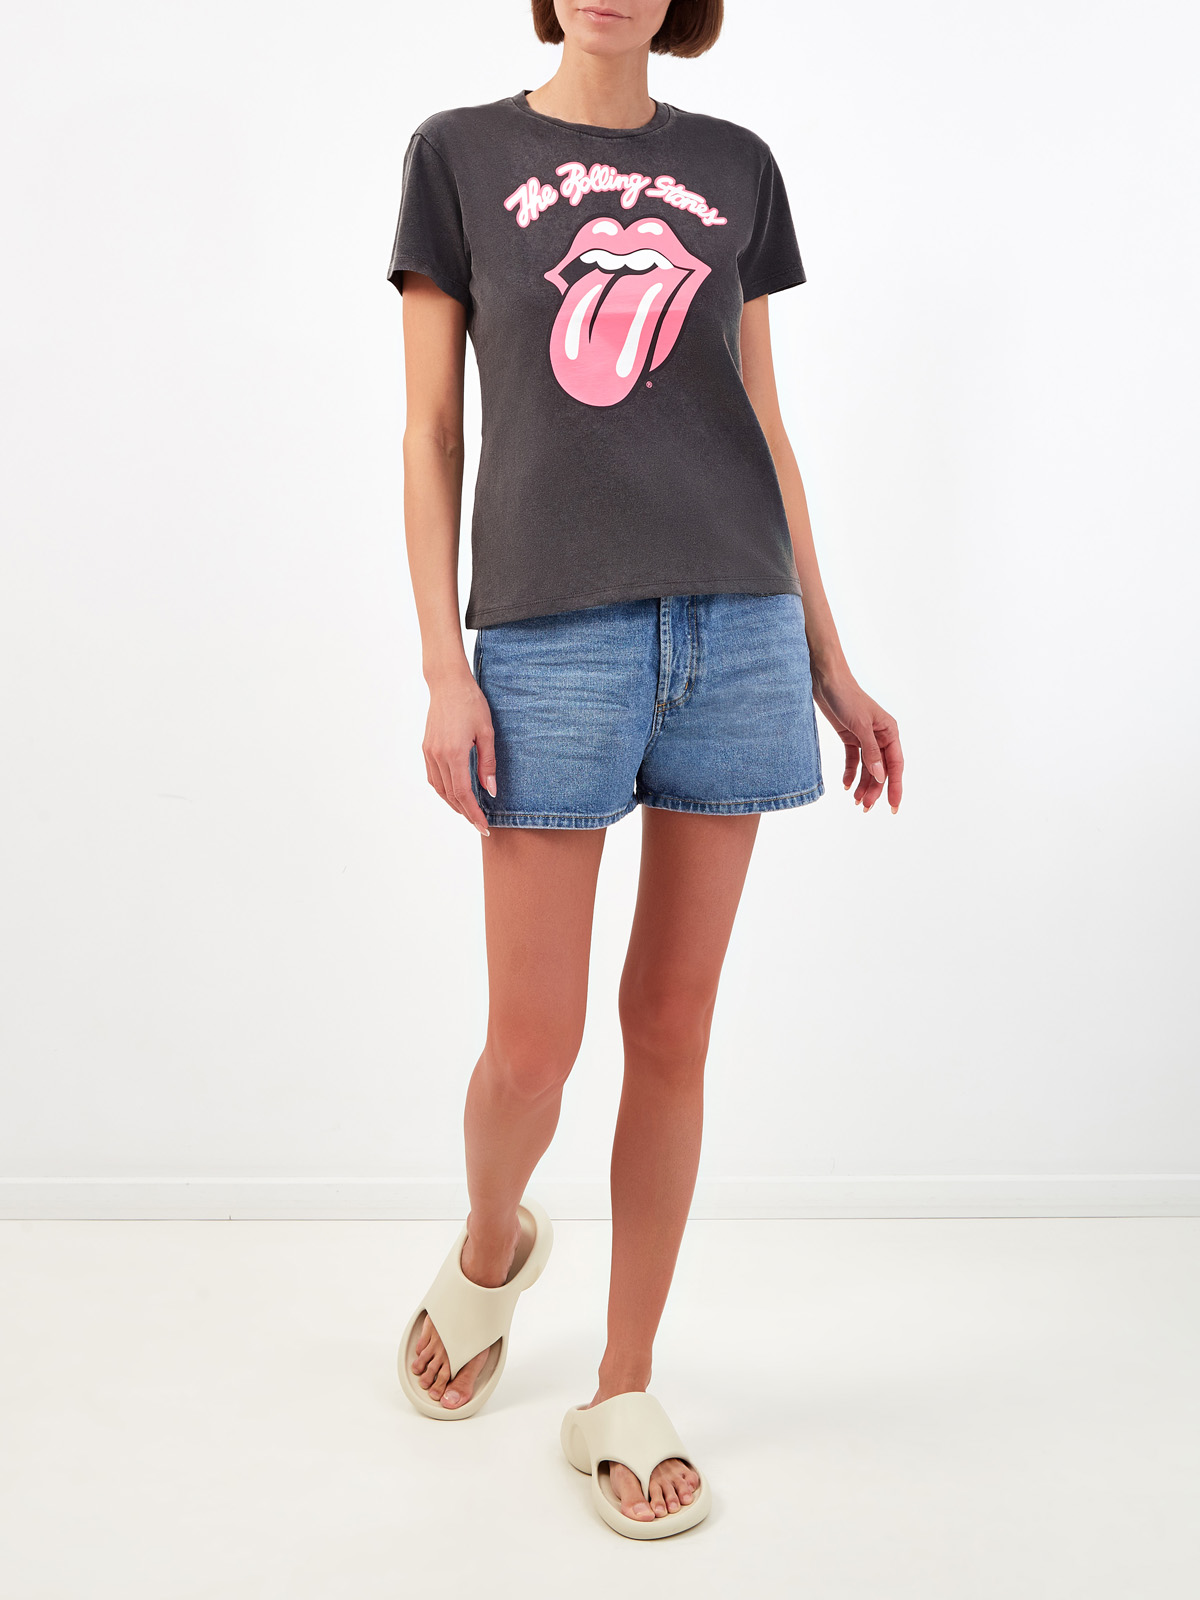 Хлопковая футболка с эксклюзивным принтом The Rolling Stones® MC2 SAINT BARTH, цвет серый, размер S;M;L - фото 2